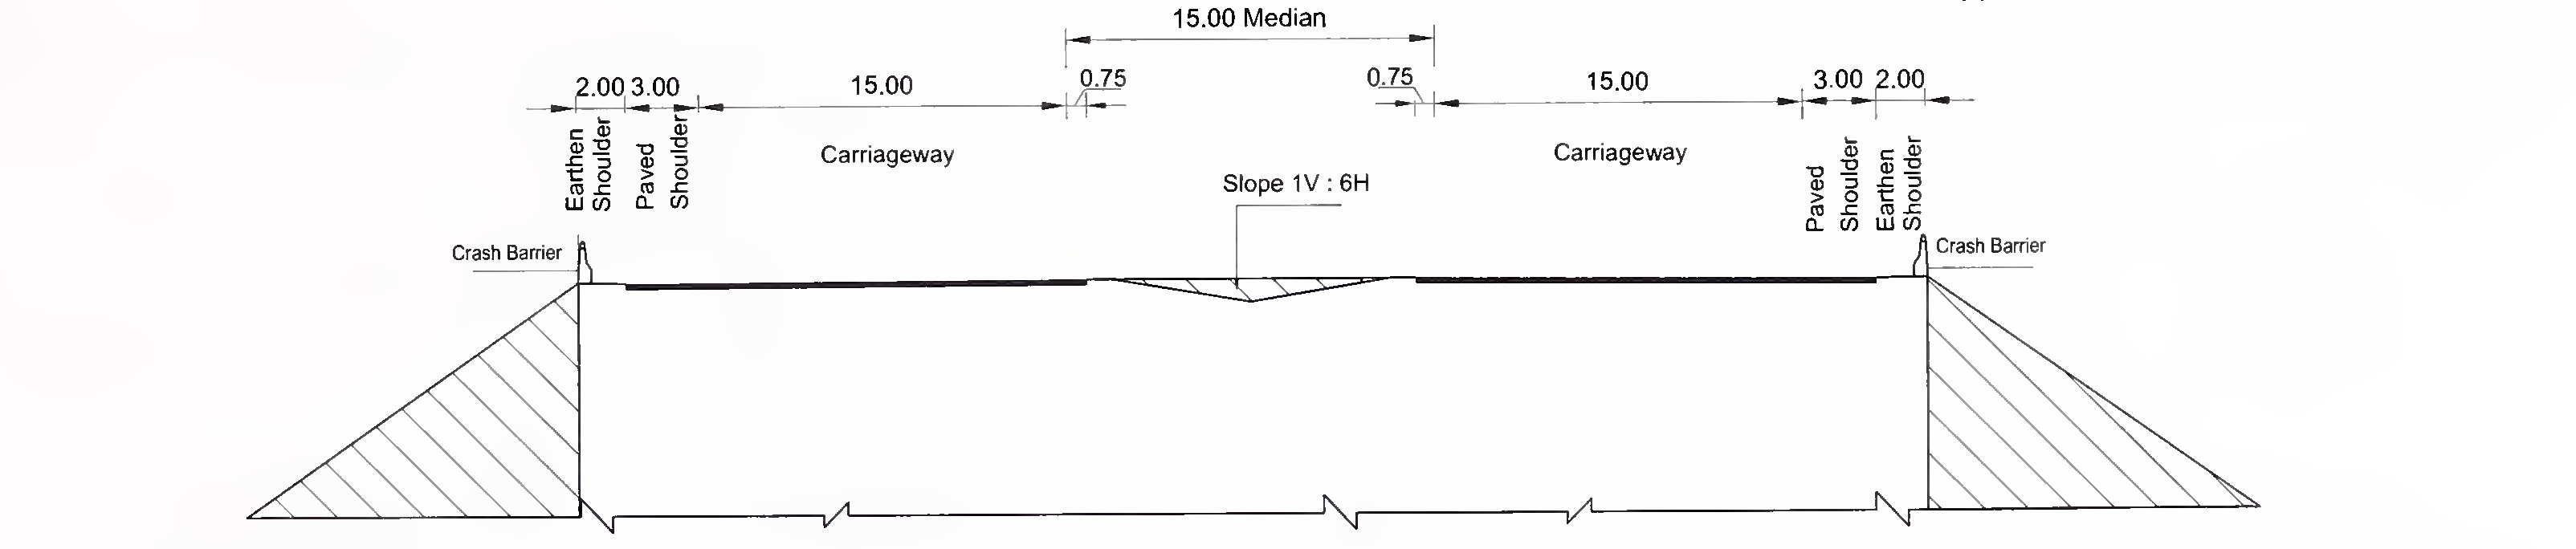 படம் 6.3 (இ) 8-லேன் (2 × 4) எக்ஸ்பிரஸ்வேயில் ஸ்லாப் மற்றும் பெட்டி வகை கல்வெட்டின் வழக்கமான குறுக்குவெட்டு